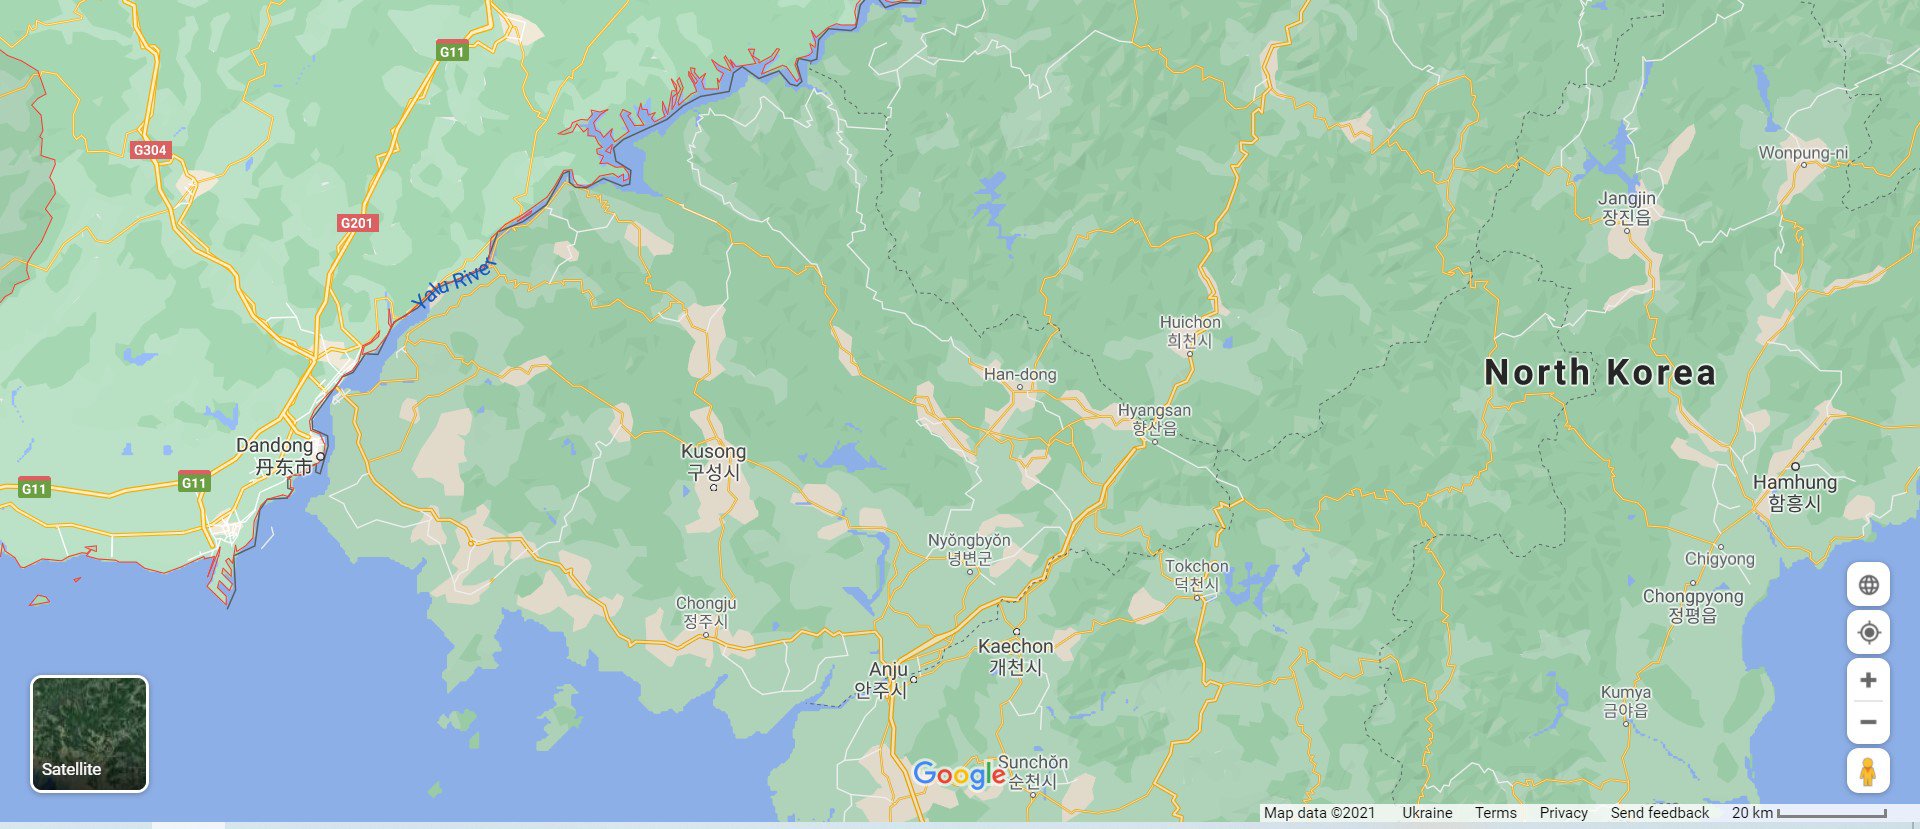 Даньдун (ліворуч унизу) розташований прямо на кордоні з КНДР: скріншот із гугл-мап